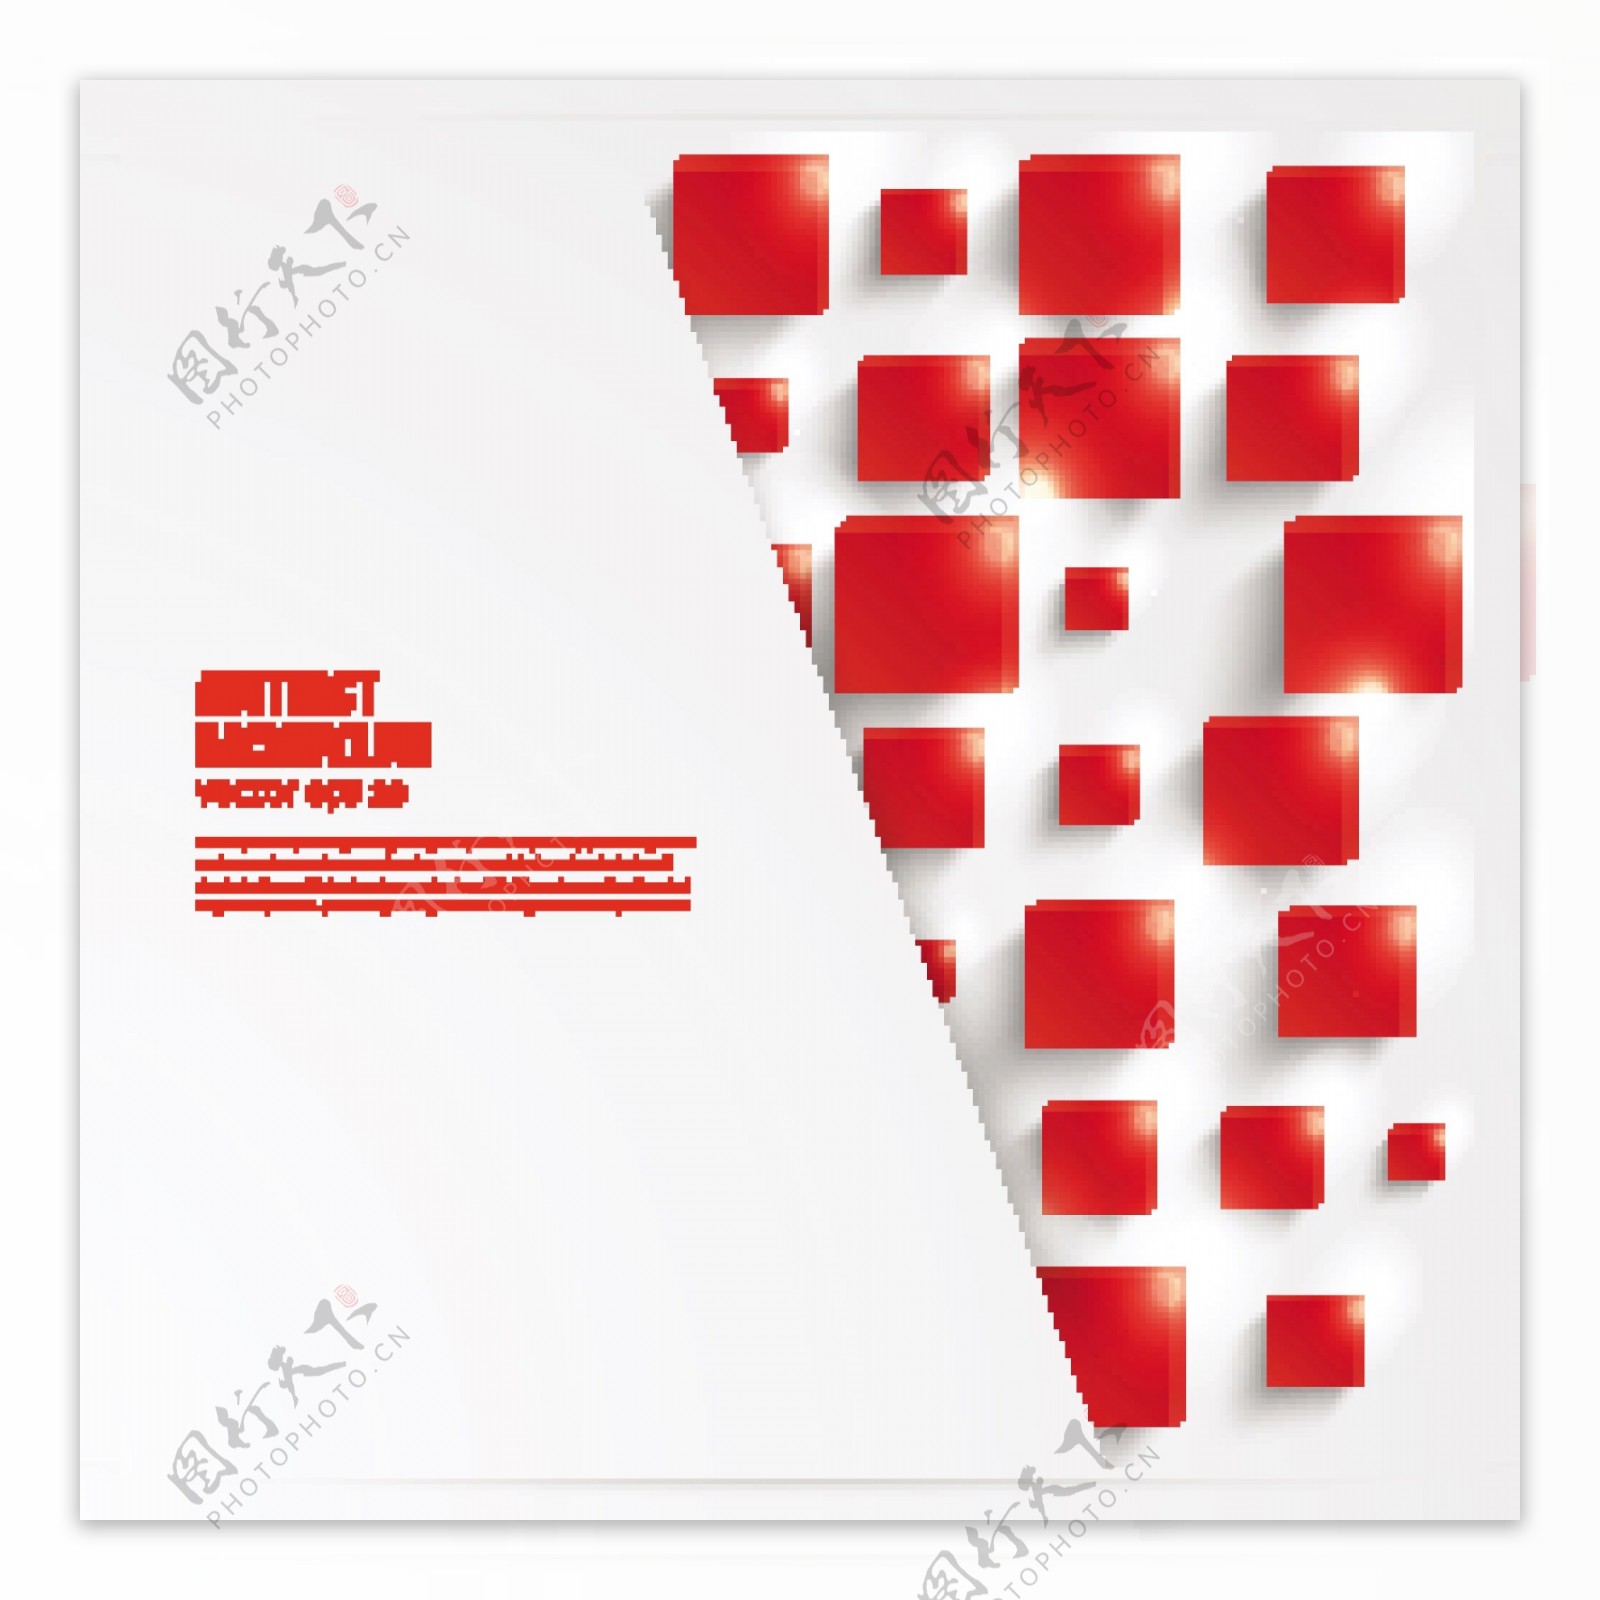 矢量抽象红色立体设计素材图片